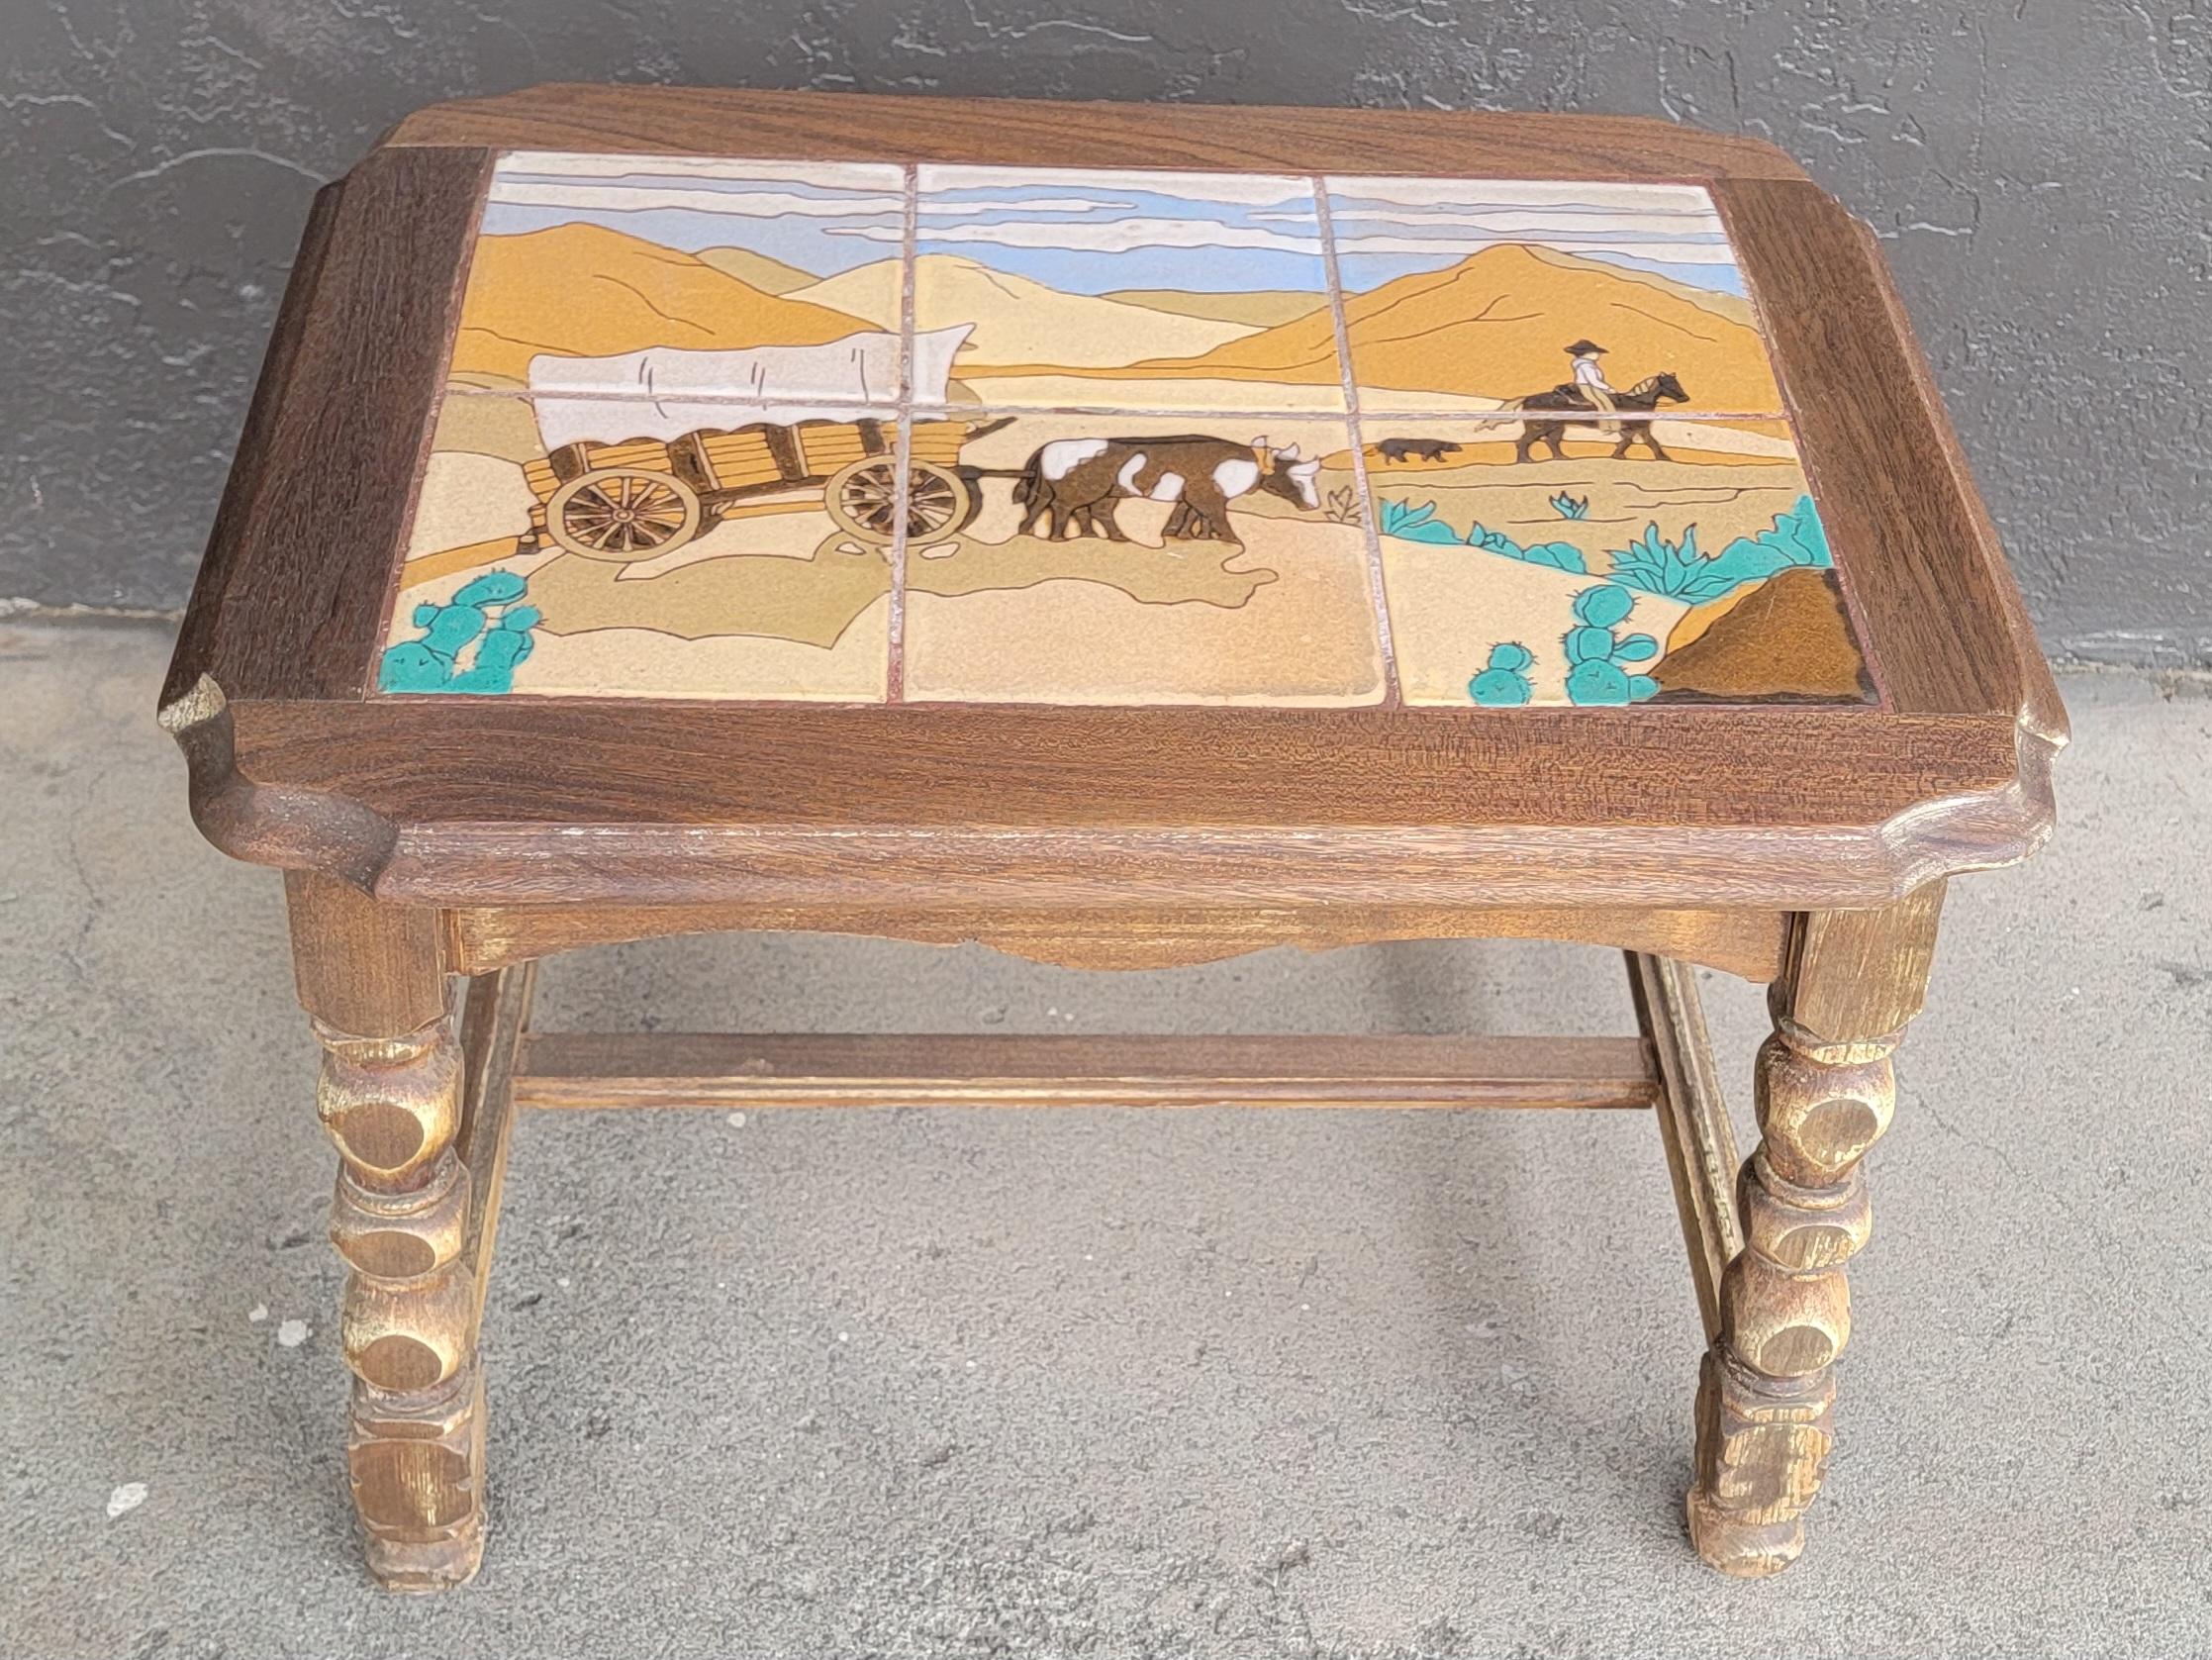 Tisch mit Kachelplatte mit Westernmotiv von Taylor Tile, Kalifornien. CIRCA. 1930's. Zeigt einen von Ochsen gezogenen Planwagen in der Wüste, einen Cowboy auf einem Pferd mit einem Hund. Kaktus und Berghintergrund. Sechs handbemalte glasierte